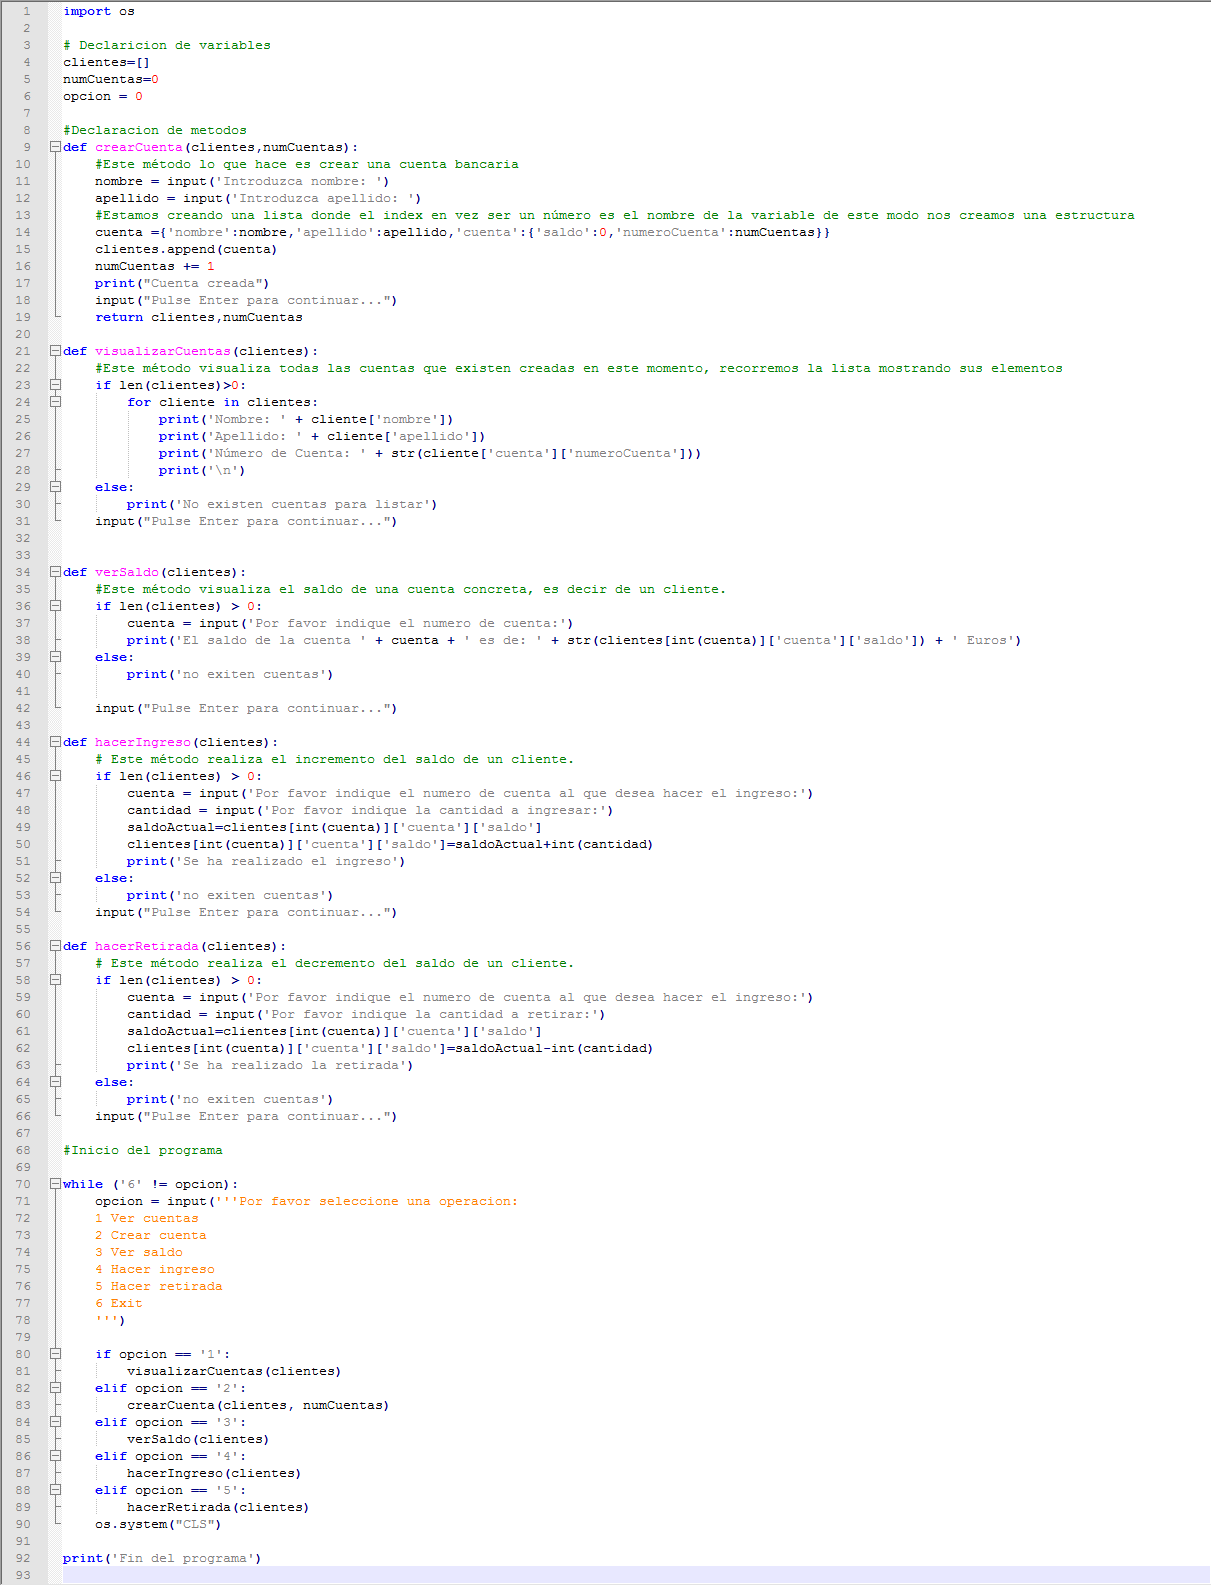 Código completo de la aplicación Python